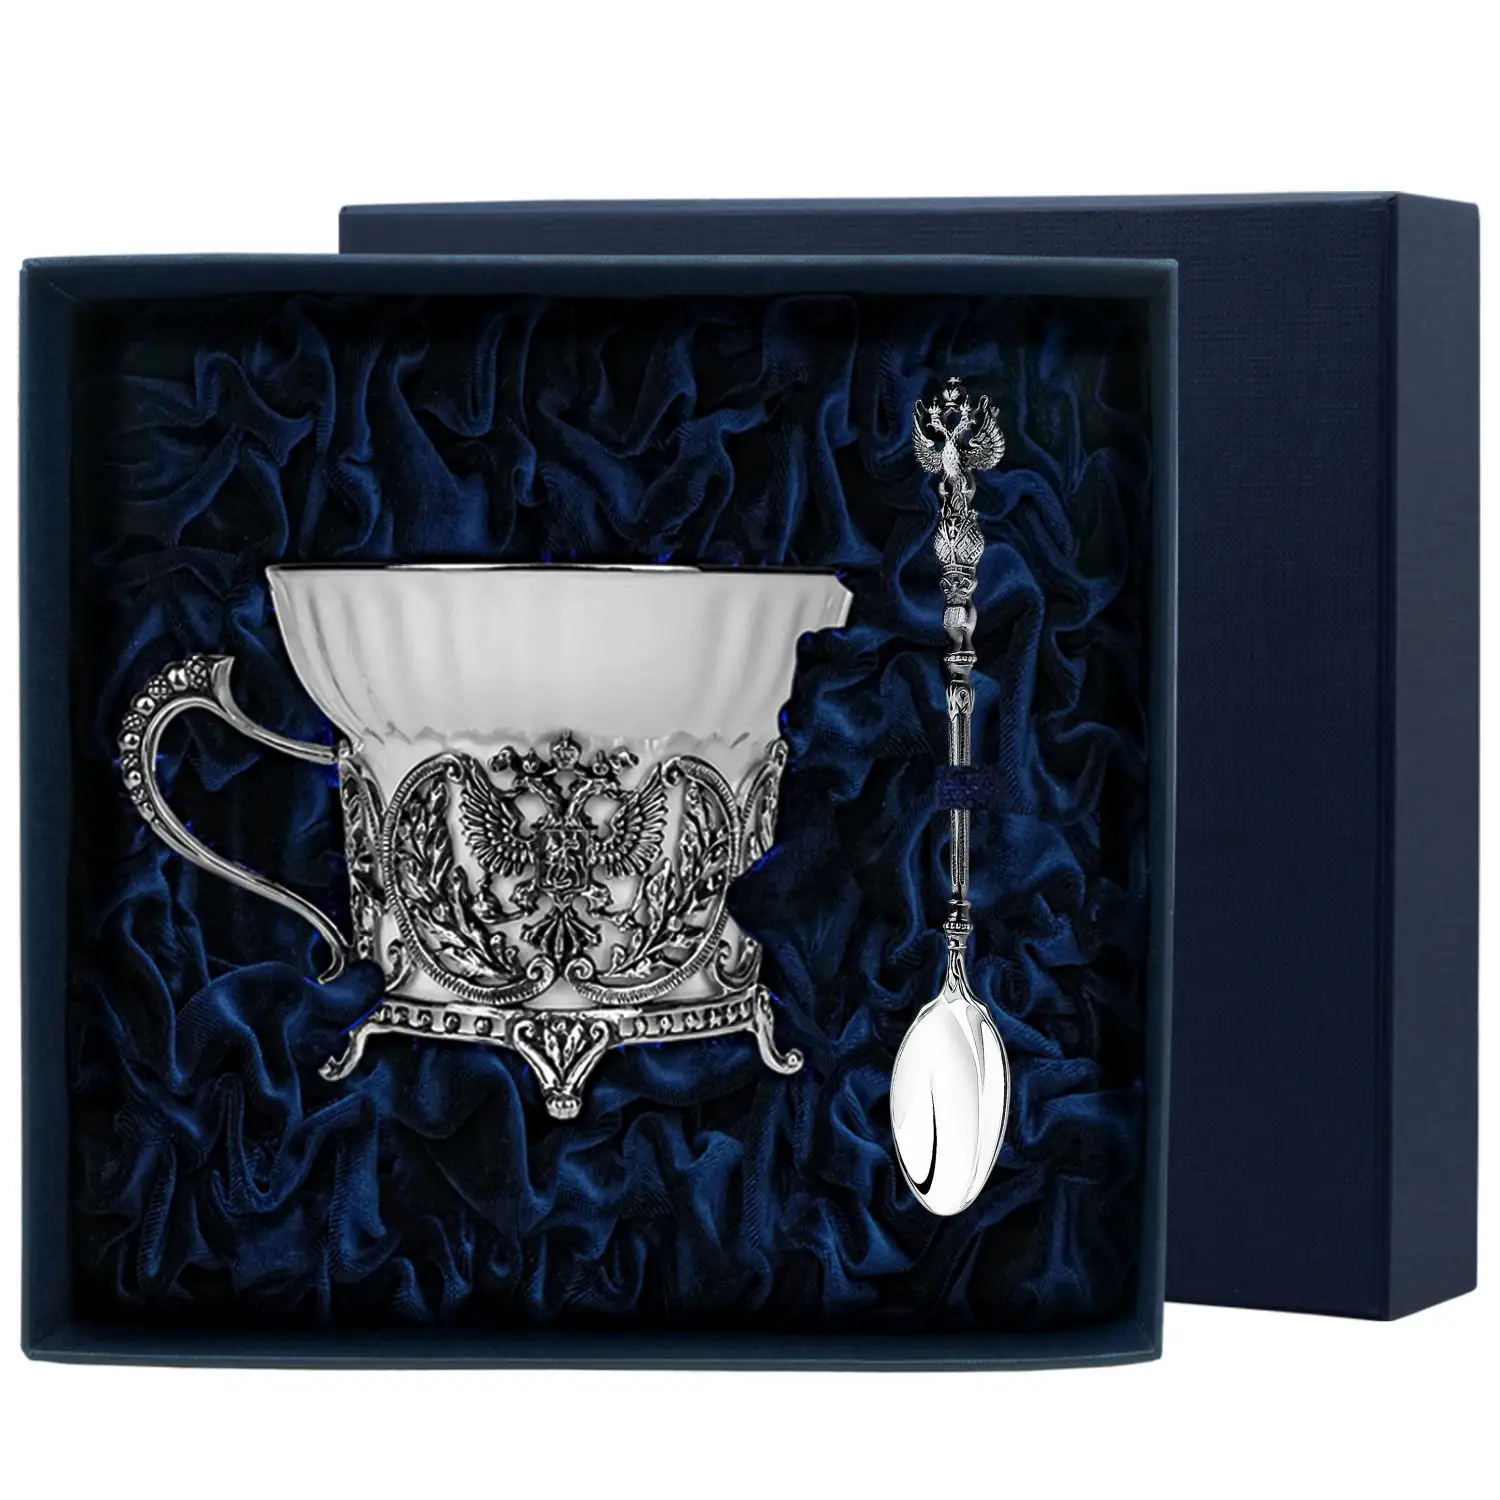 Набор чайная чашка Герб: ложка, чашка (Серебро 925) набор чайная чашка куница ложка чашка серебро 925